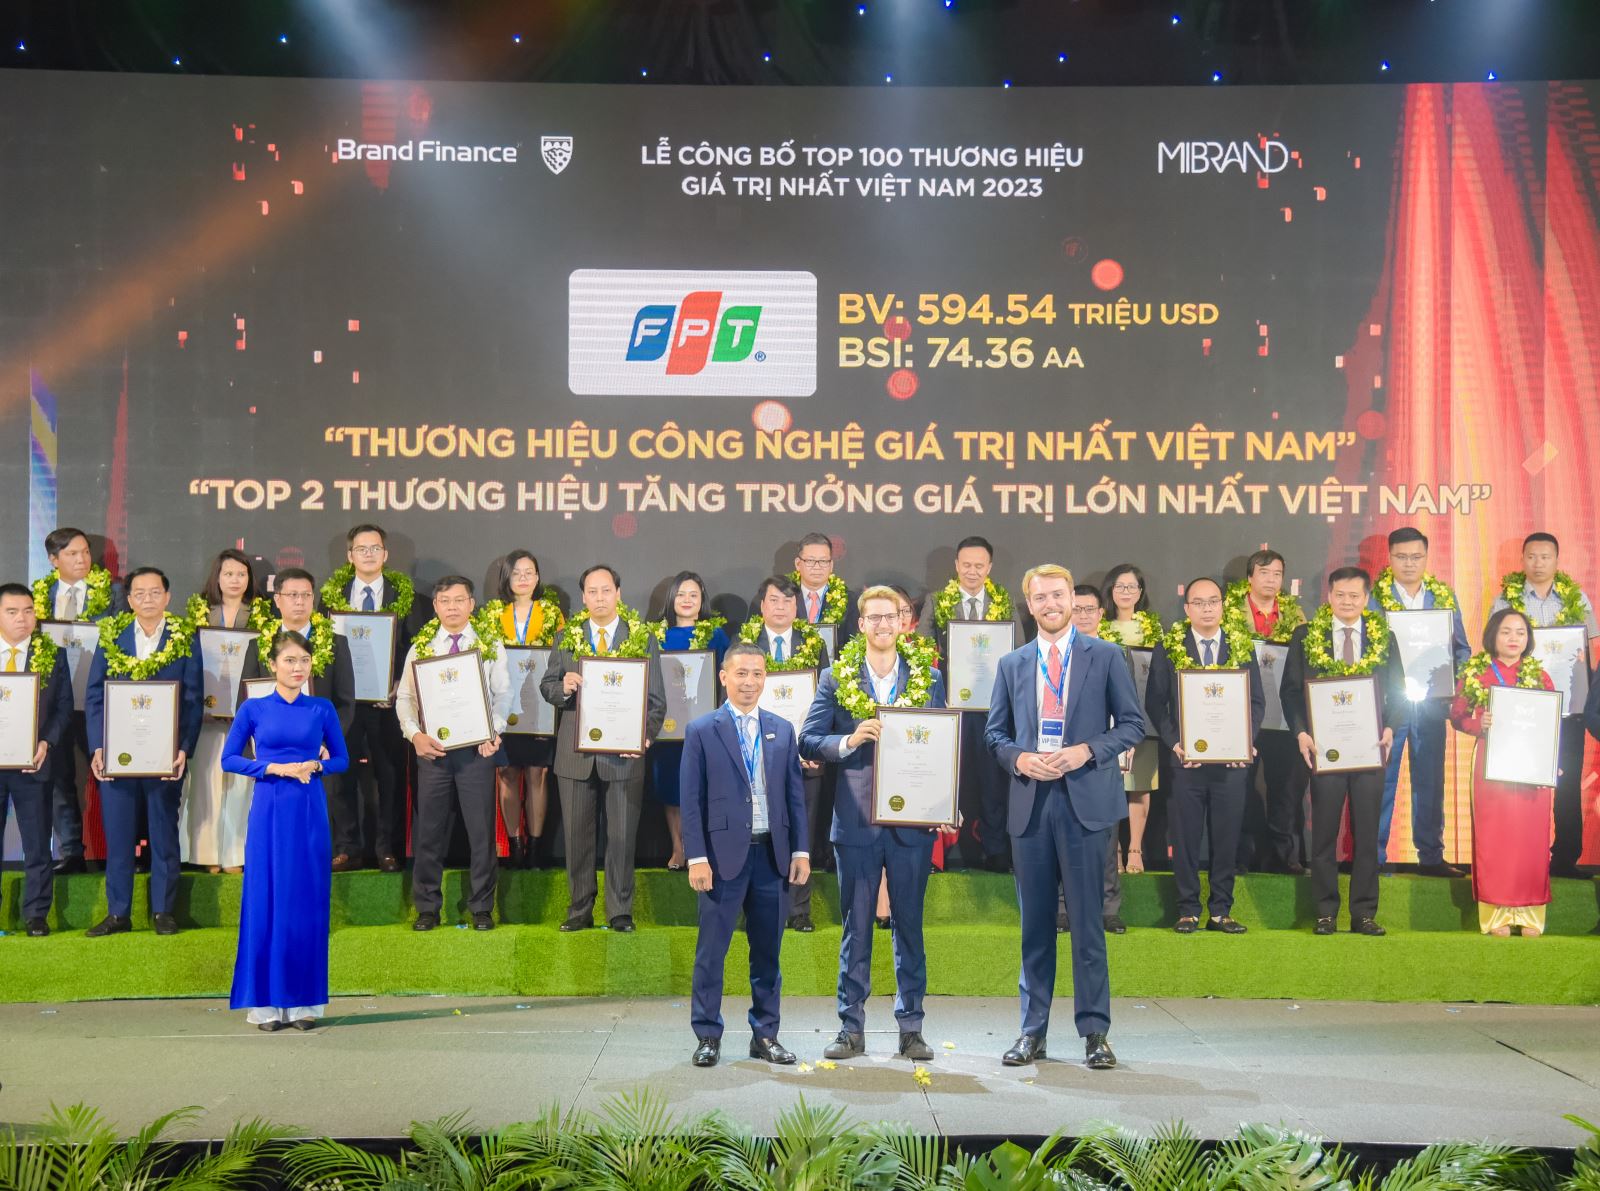 Đại diện FPT nhận chứng nhận FPT là Thương hiệu Công nghệ giá trị nhất Việt Nam, đồng thời giữ vị trí Top 2 Thương hiệu tăng trưởng nhanh nhất Việt Nam dựa trên giá trị thương hiệu.